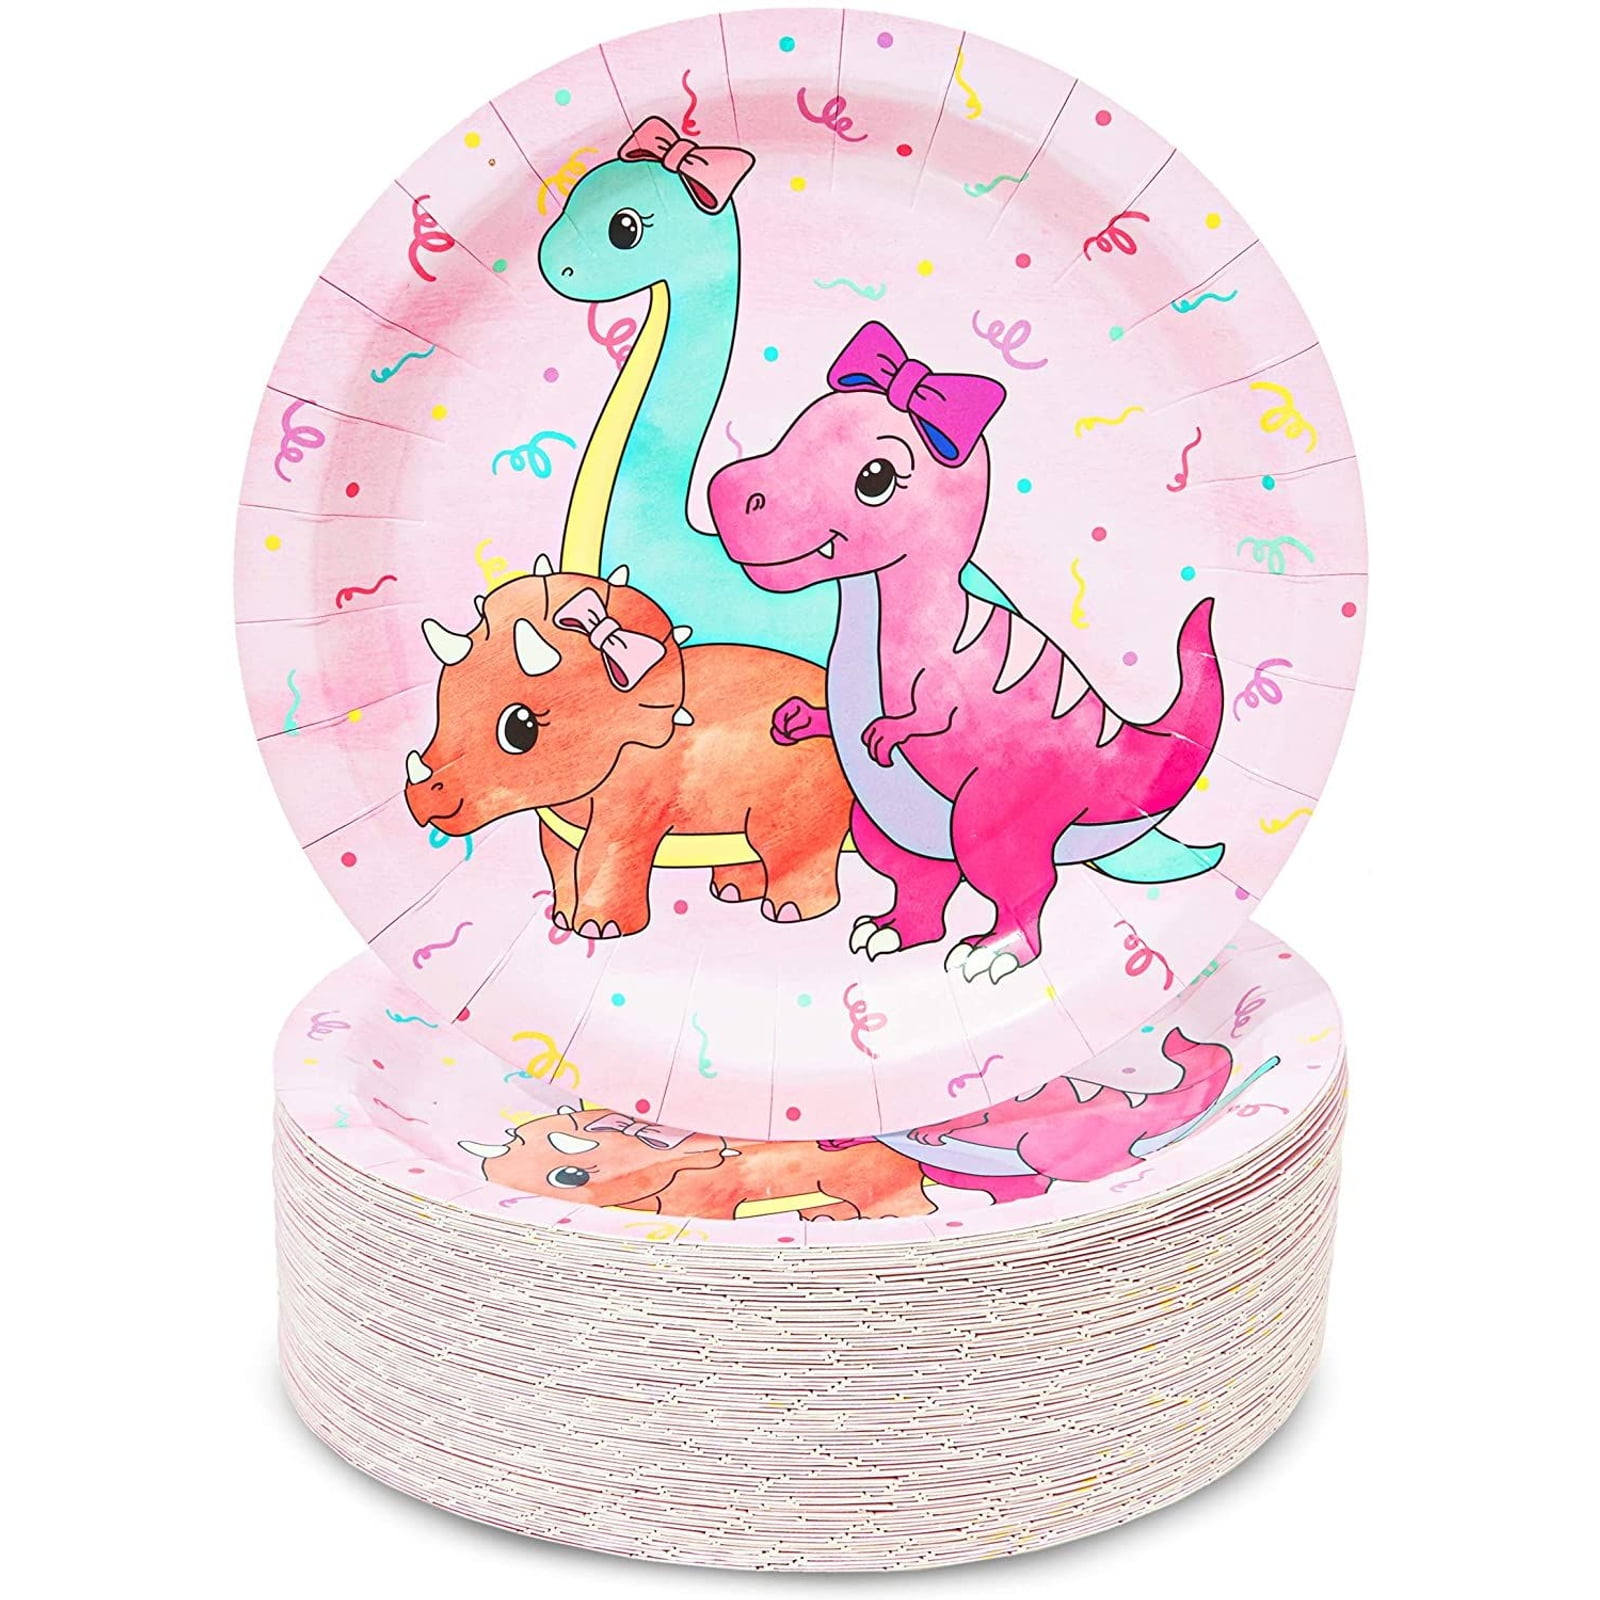 Devra LT Pink Tissue Paper Fan 13in | The Party Darling